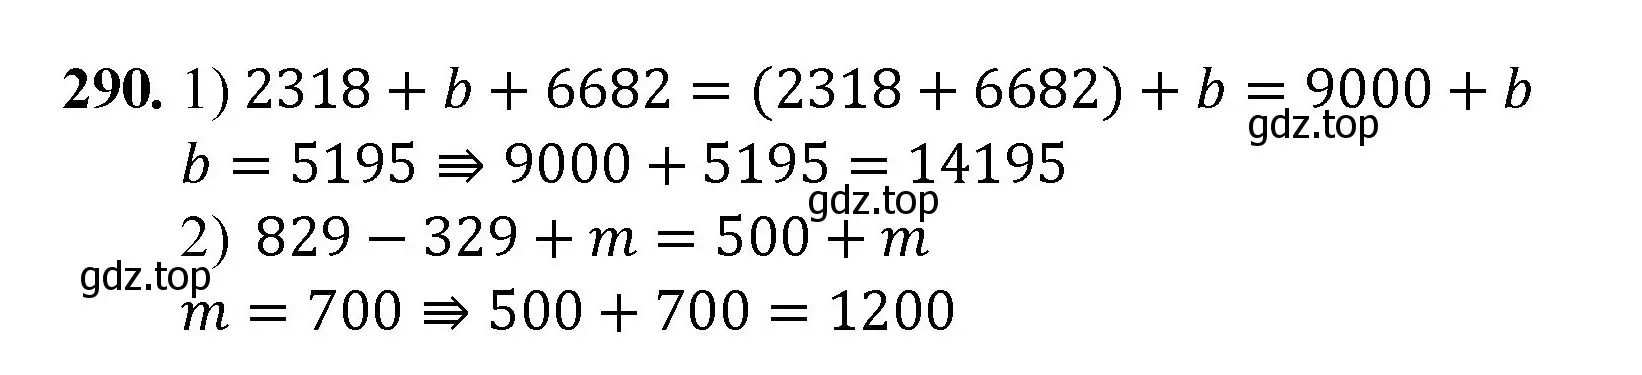 Решение номер 290 (страница 74) гдз по математике 5 класс Мерзляк, Полонский, учебник